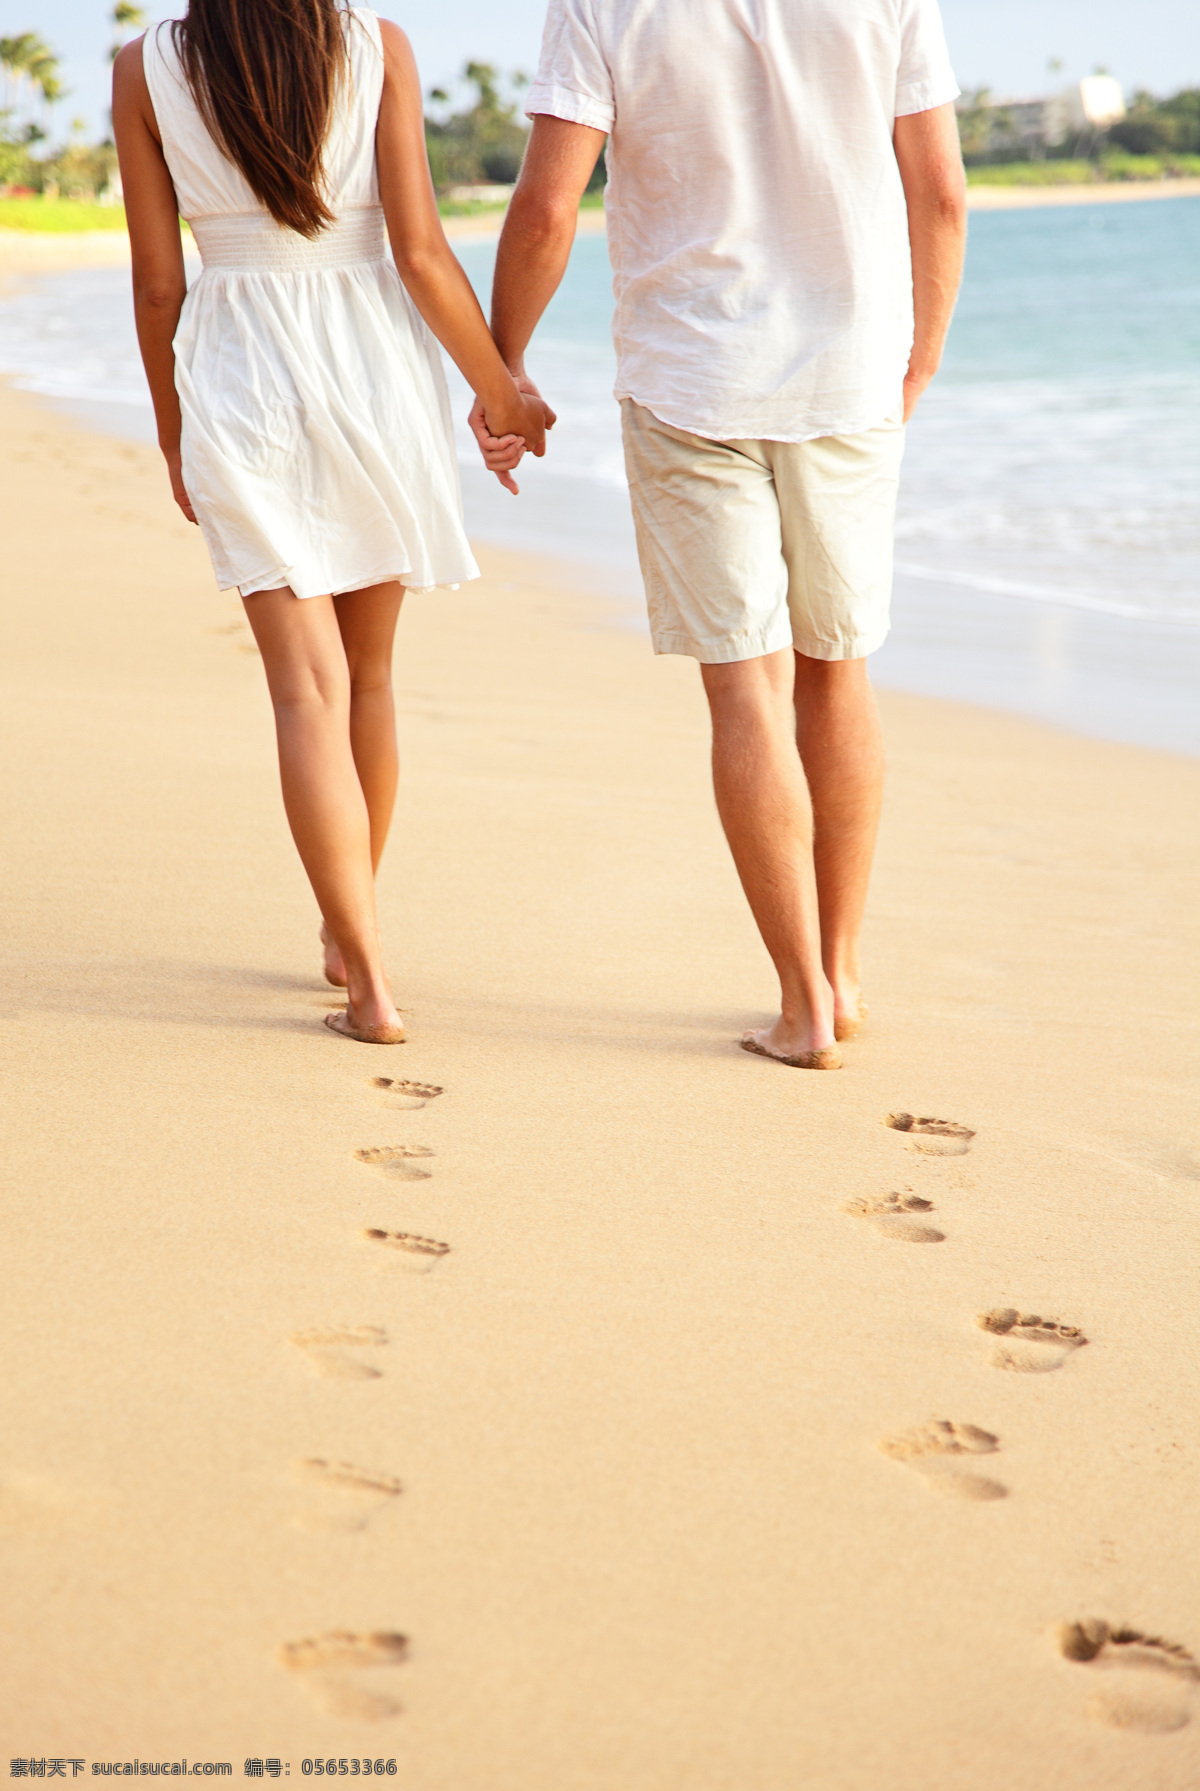 沙滩 上 情侣 脚印 外国情侣 大海 手拉手 背影 情侣图片 人物图片